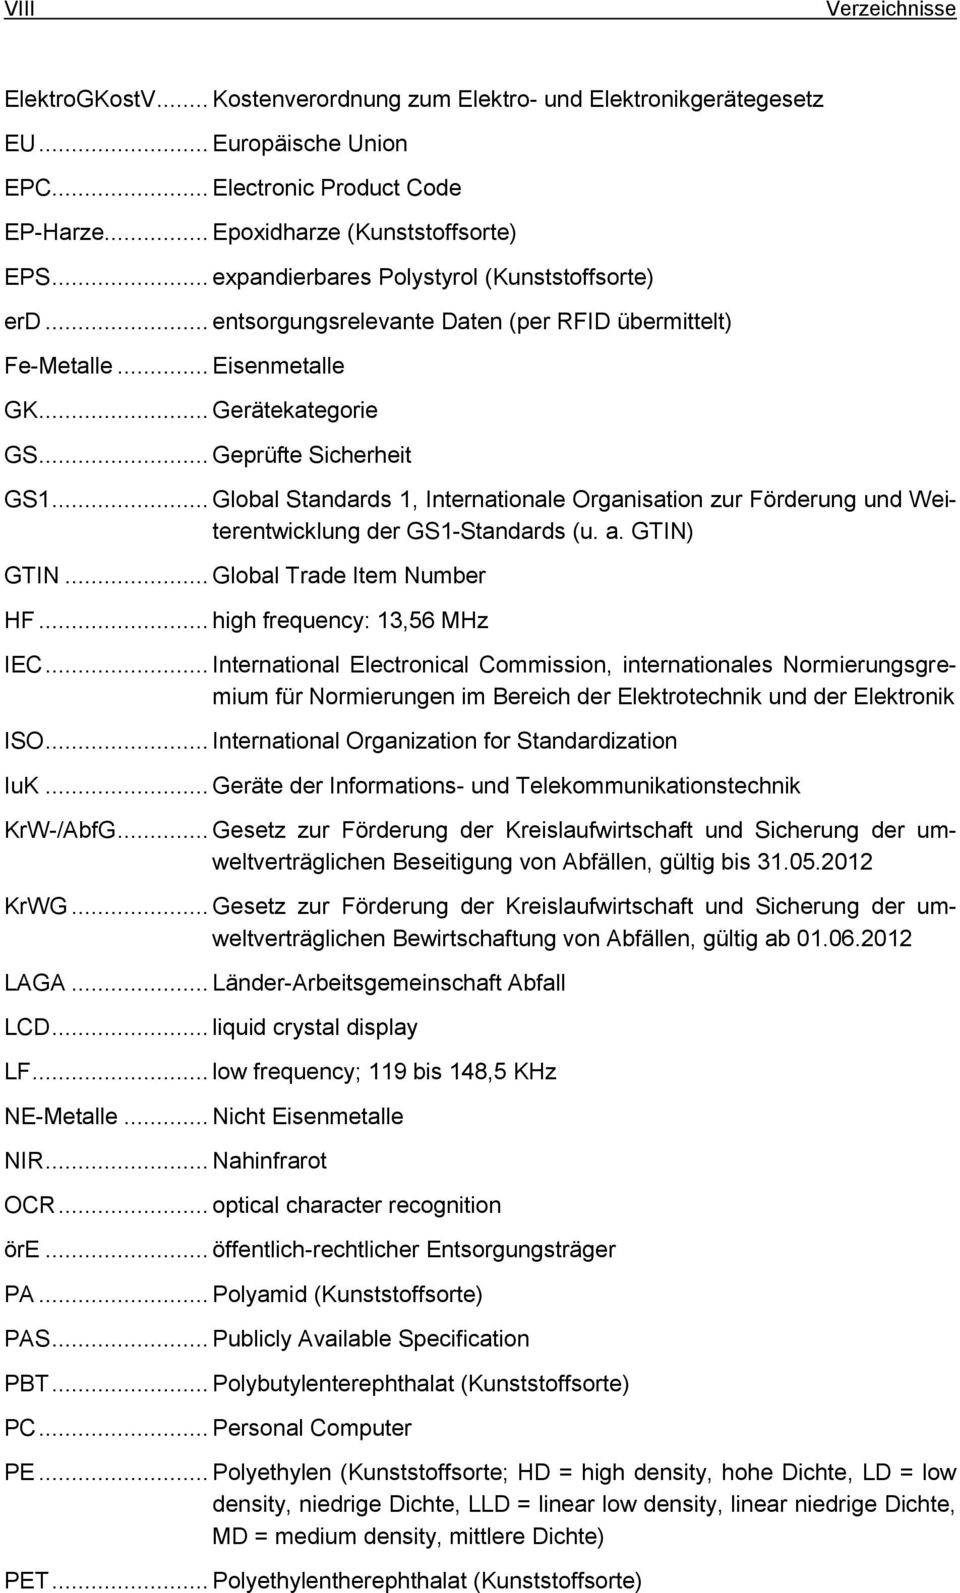 .. Global Standards 1, Internationale Organisation zur Förderung und Weiterentwicklung der GS1-Standards (u. a. GTIN) GTIN... Global Trade Item Number HF... high frequency: 13,56 MHz IEC.